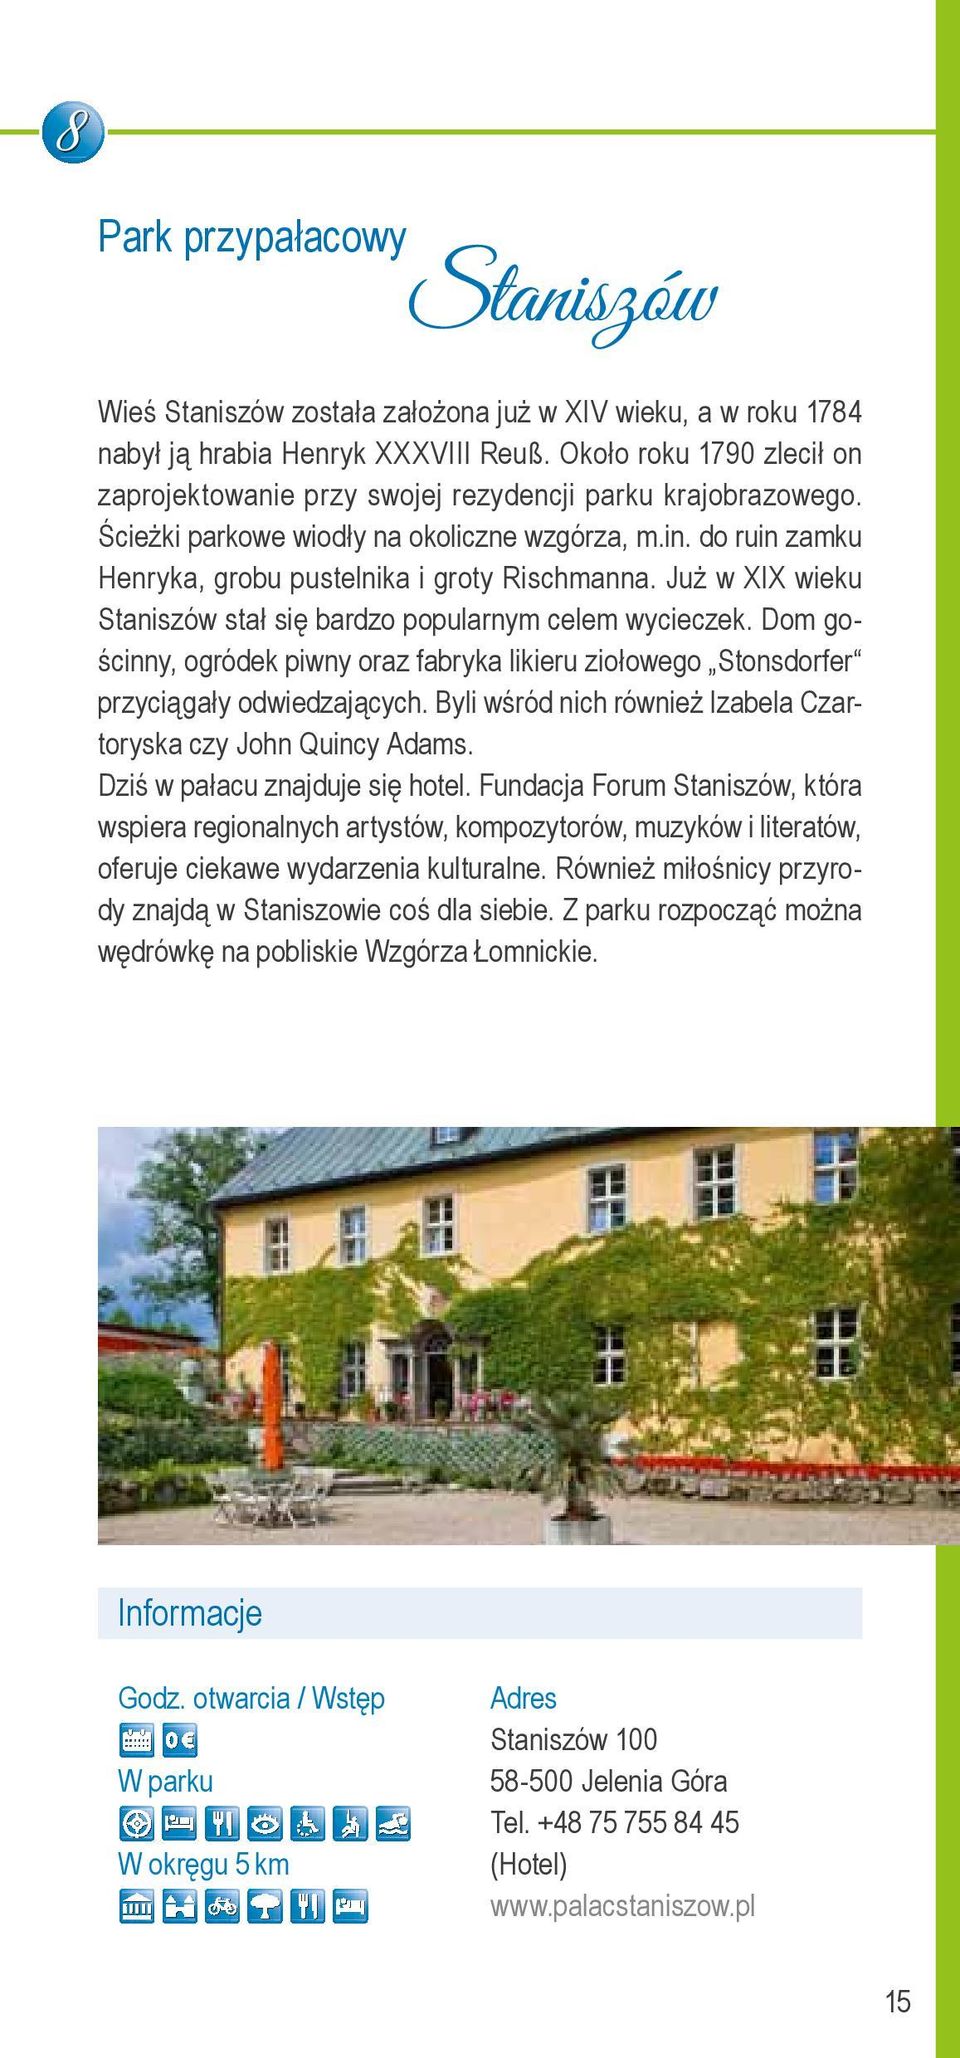 Już w XIX wieku Staniszów stał się bardzo popularnym celem wycieczek. Dom gościnny, ogródek piwny oraz fabryka likieru ziołowego Stonsdorfer przyciągały odwiedzających.